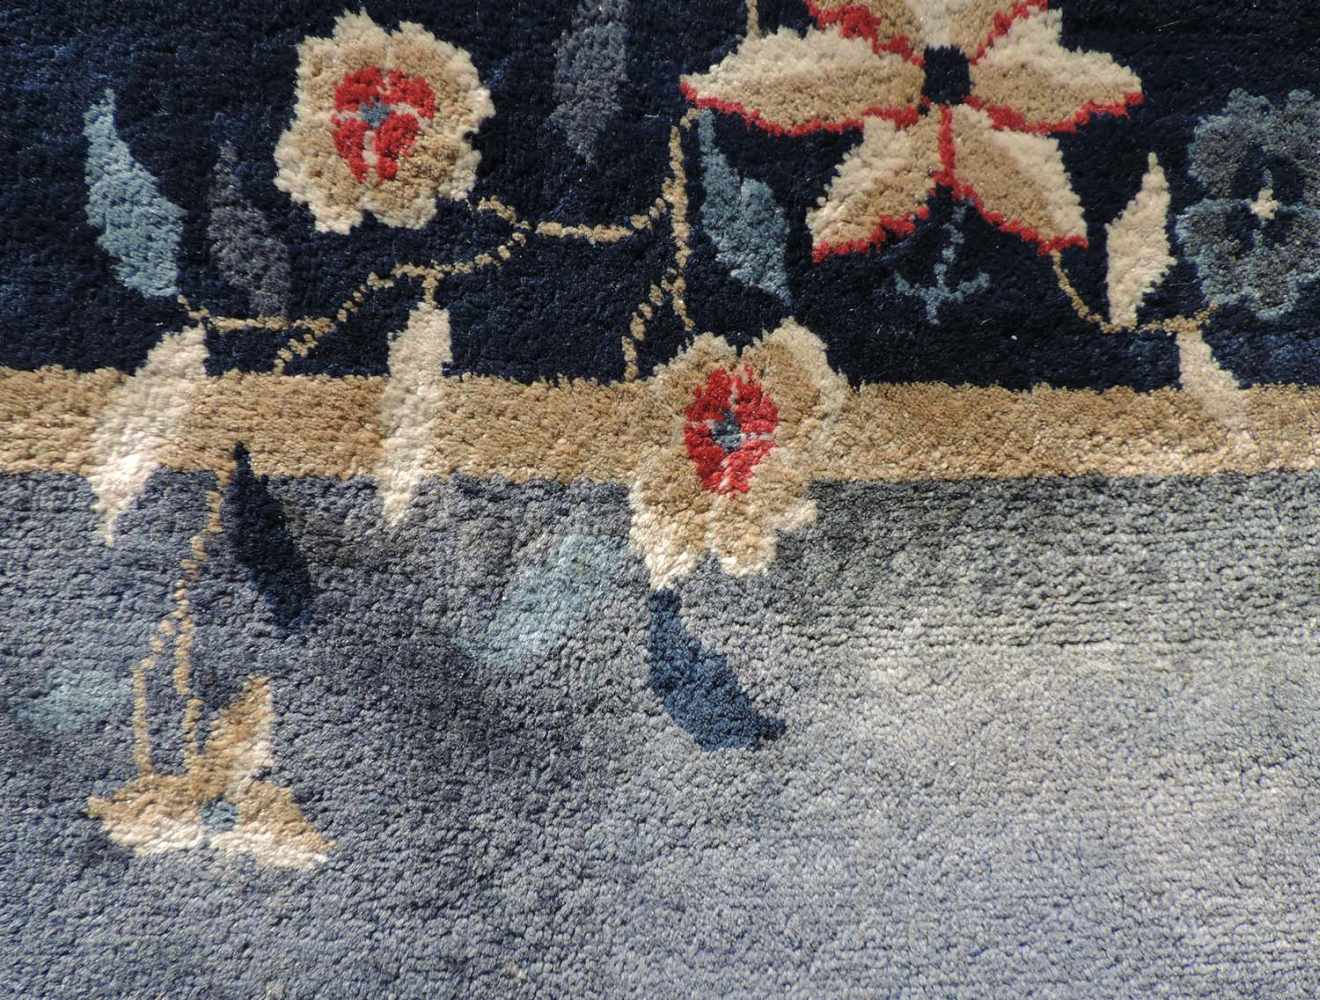 Peking Teppich. China. Antik. Um 1920 361 cm x 267 cm. Handgeknüpft. Mancesterwolle auf Baumwolle. - Image 7 of 8